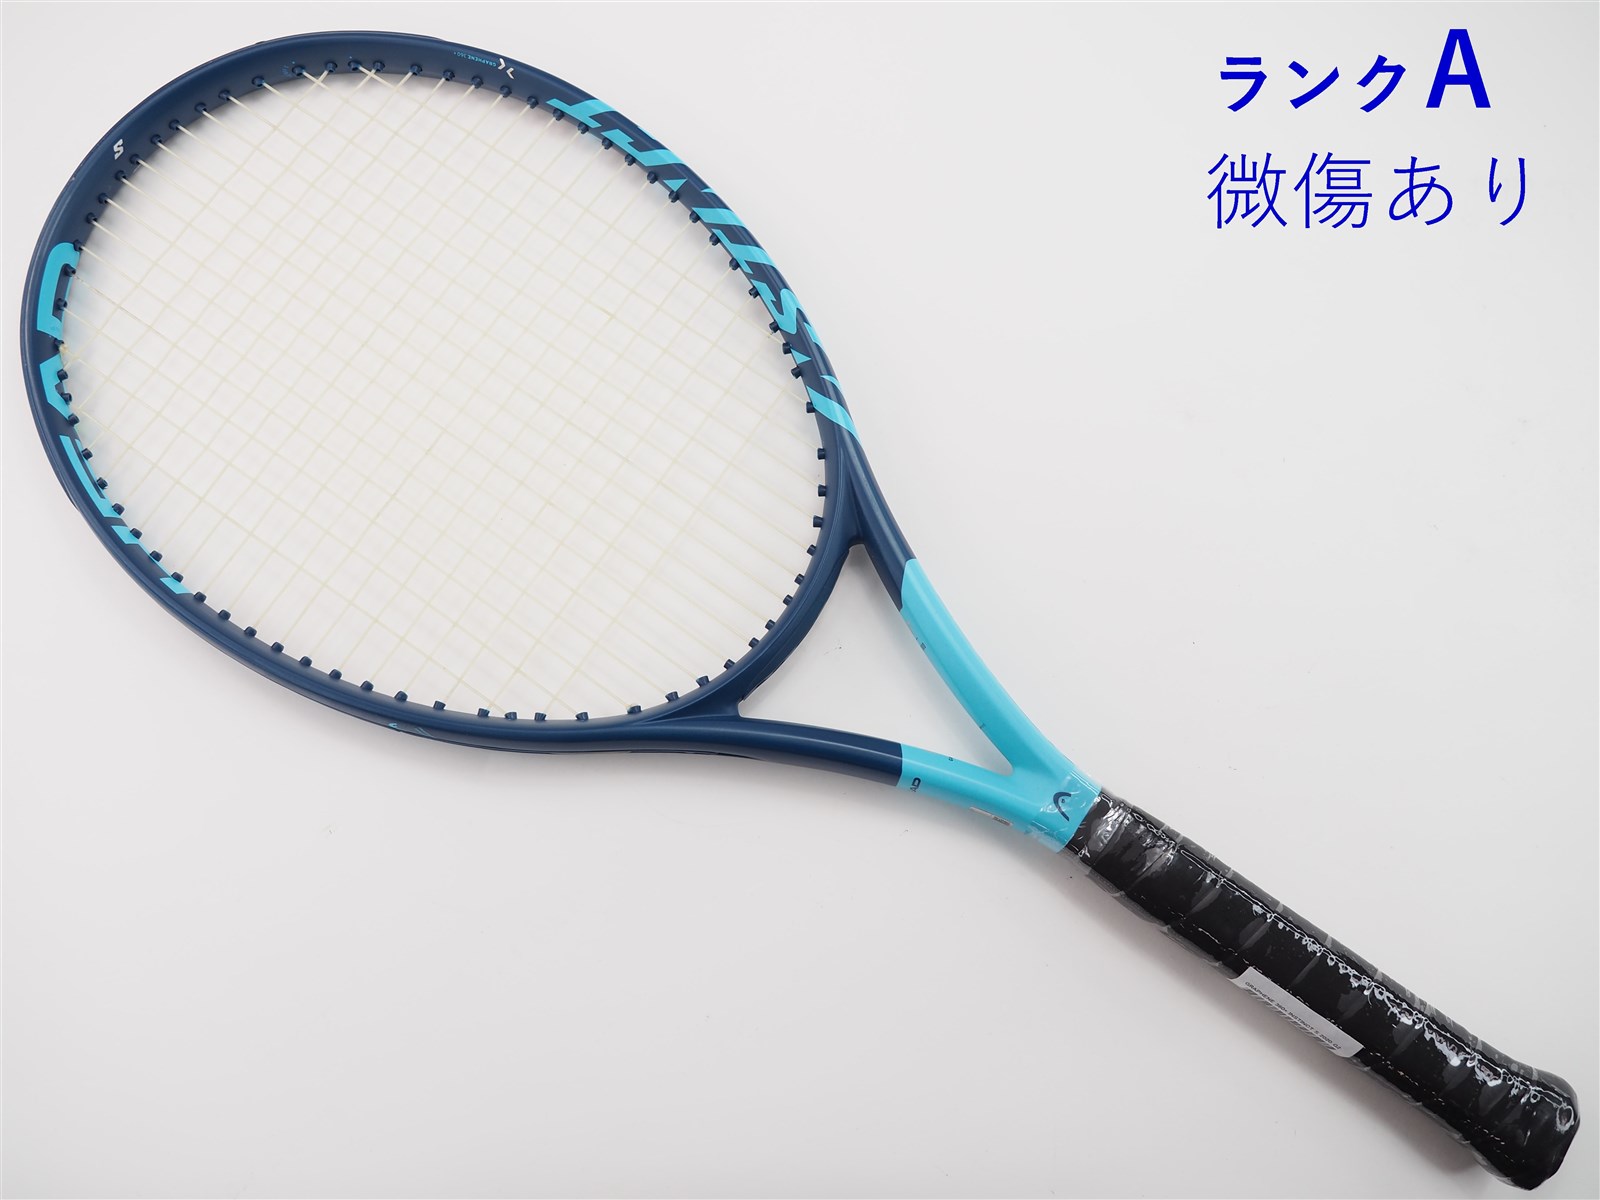 テニスラケット ヘッド インスティンクト エス2 (G2)HEAD INSTINCT S2B若干摩耗ありグリップサイズ